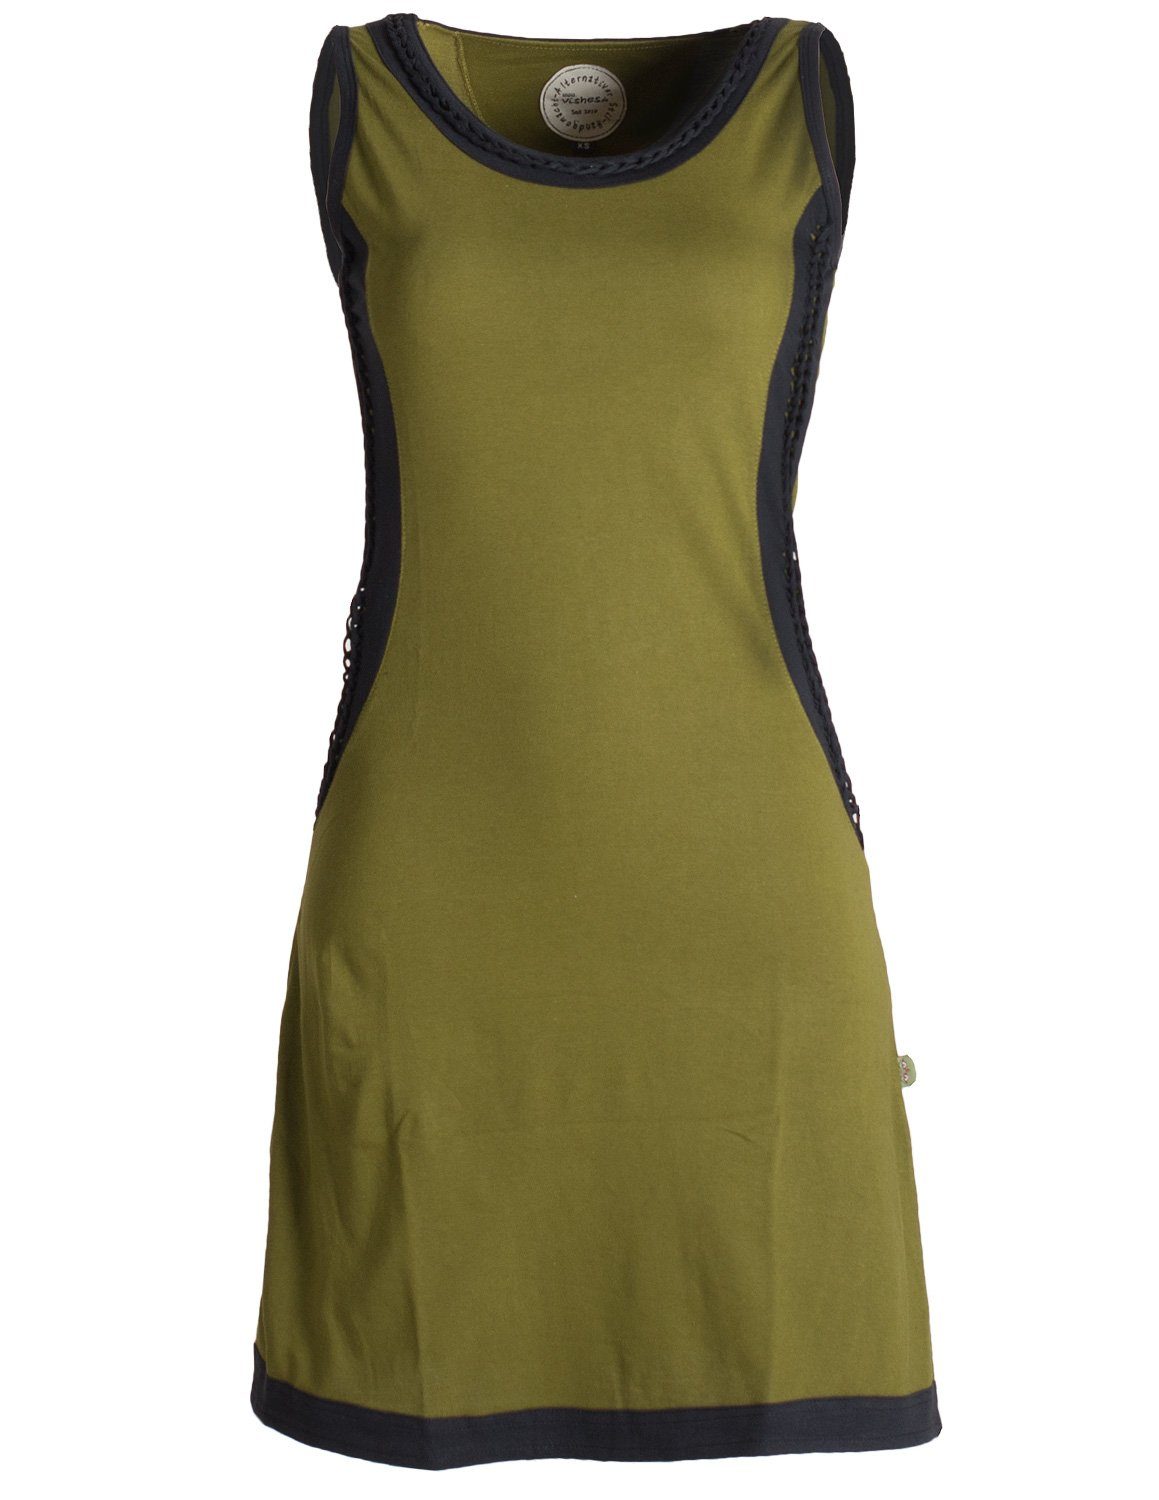 Vishes Sommerkleid Ärmelloses Kleid mit geflochtenen Einsätzen Tunika, Hippie, Ethno, Goa, Boho Style olive